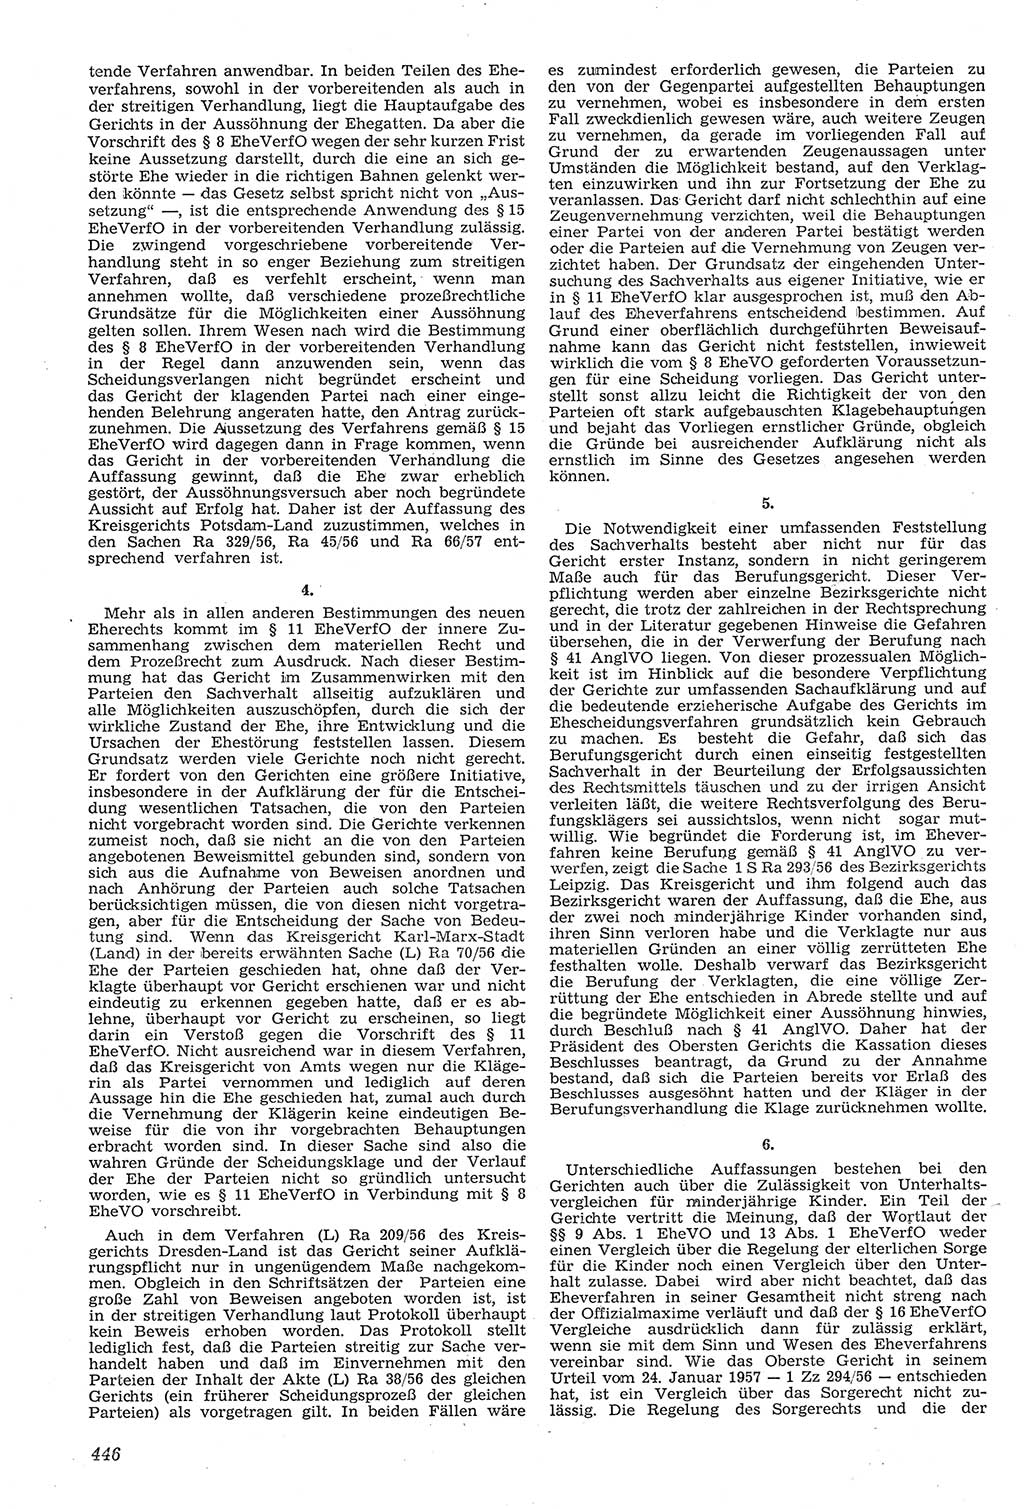 Neue Justiz (NJ), Zeitschrift für Recht und Rechtswissenschaft [Deutsche Demokratische Republik (DDR)], 11. Jahrgang 1957, Seite 446 (NJ DDR 1957, S. 446)